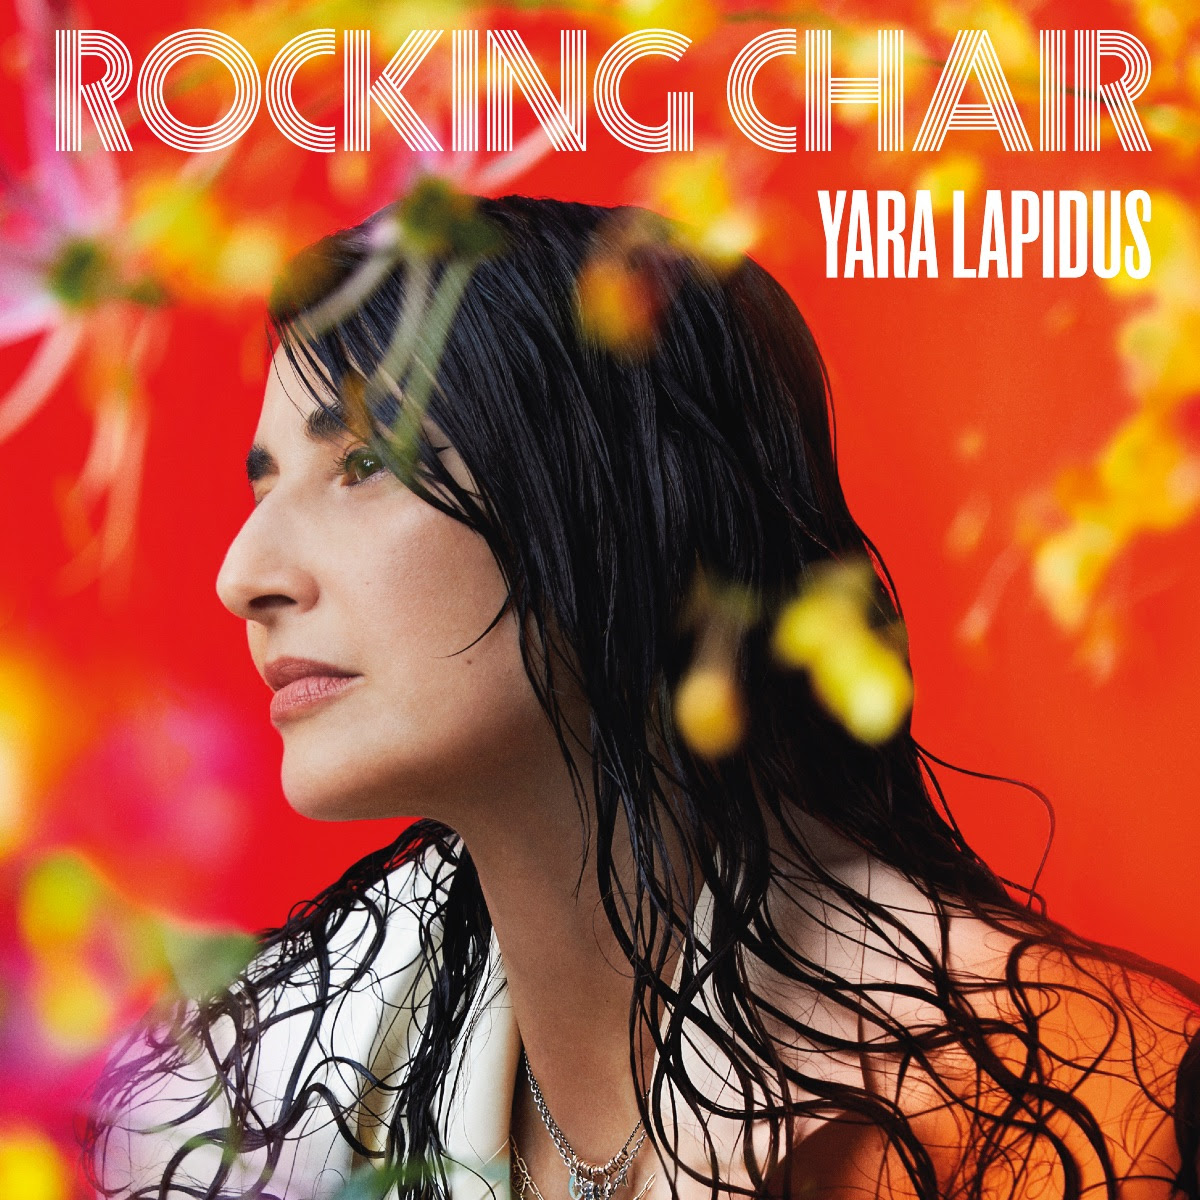 Yara Lapidus offre un extrait de son album Back To Colors avec Rocking Chair feat Thomas Monica